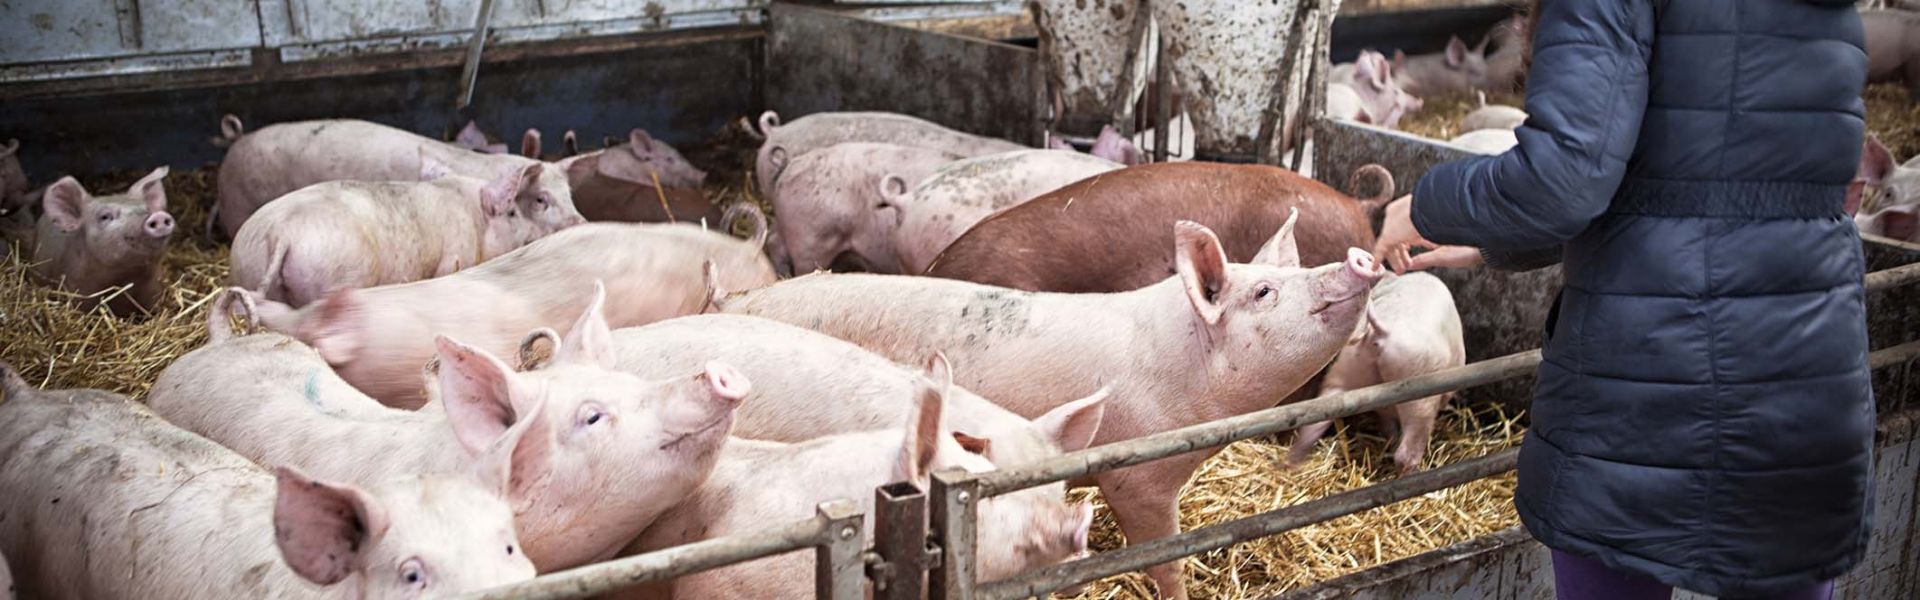 Un groupe de porcs dans un élevage